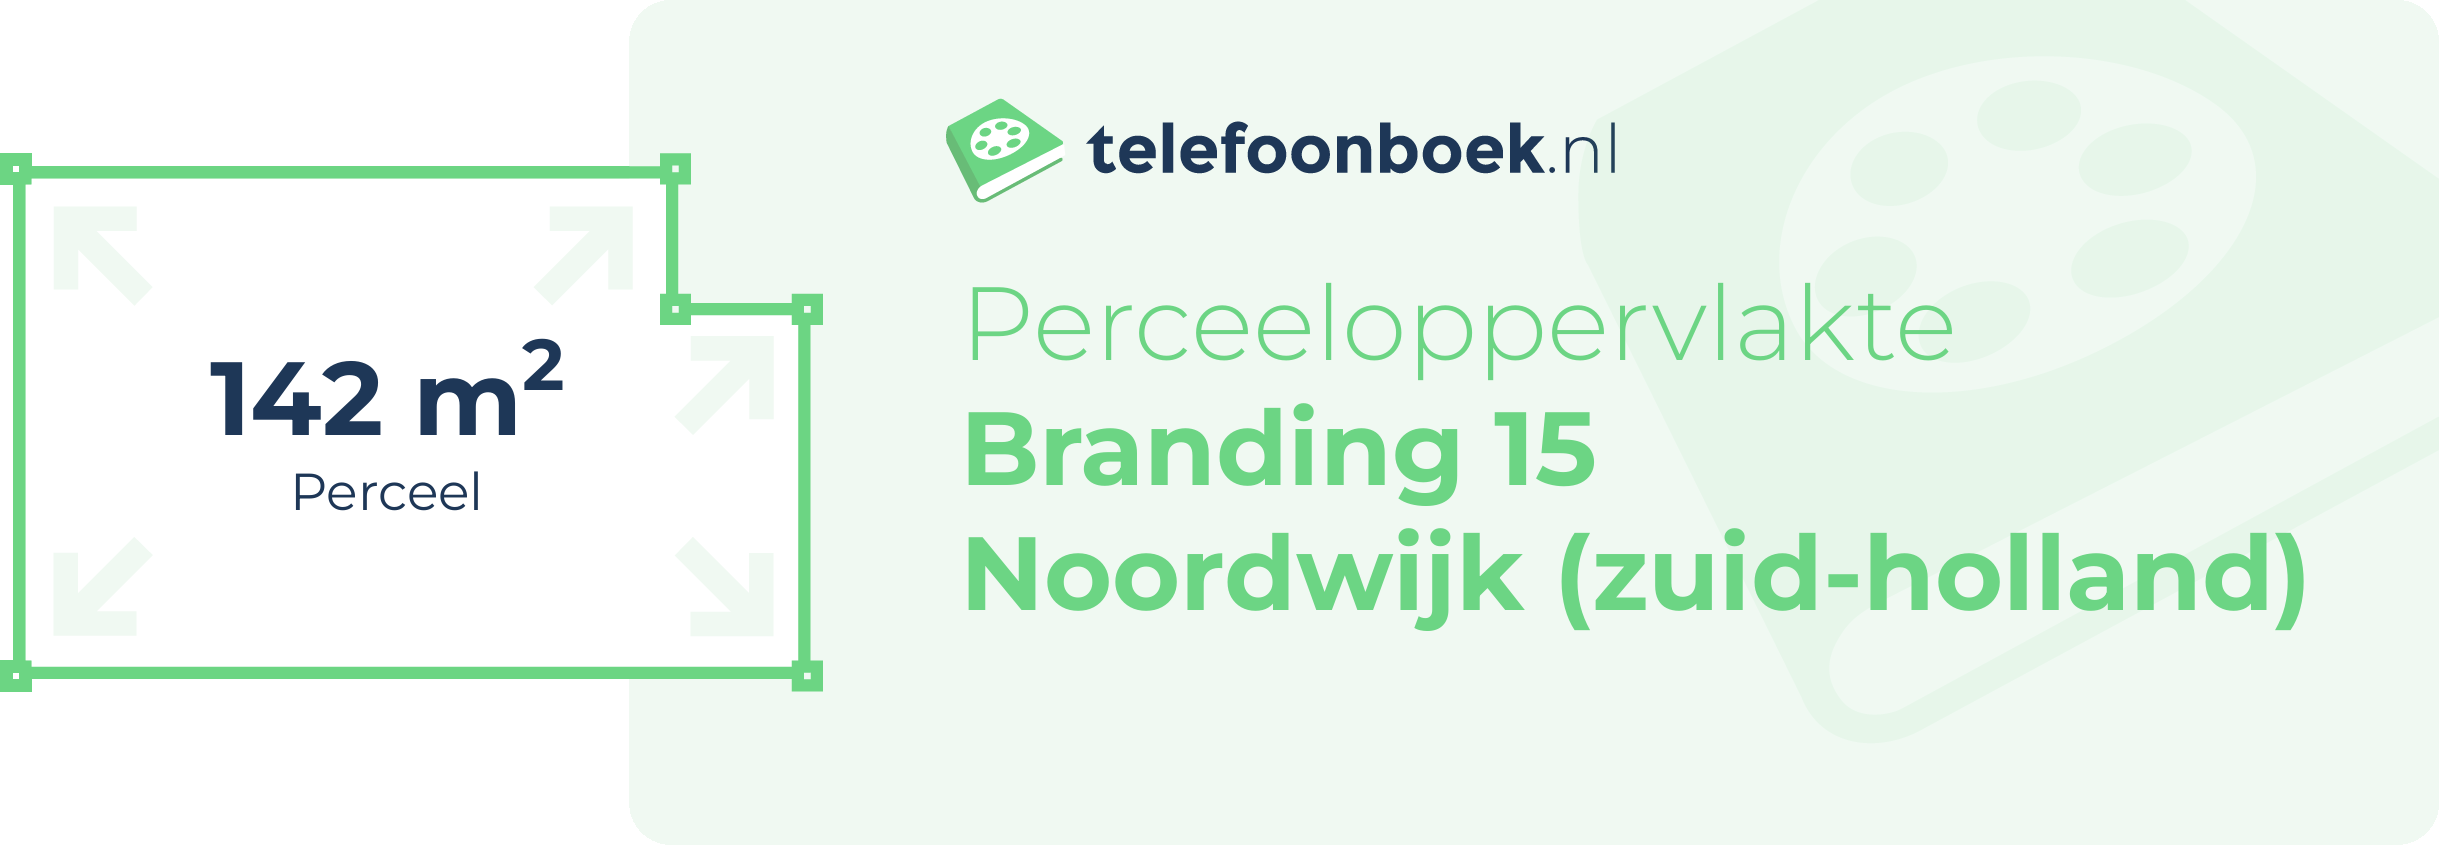 Perceeloppervlakte Branding 15 Noordwijk (Zuid-Holland)